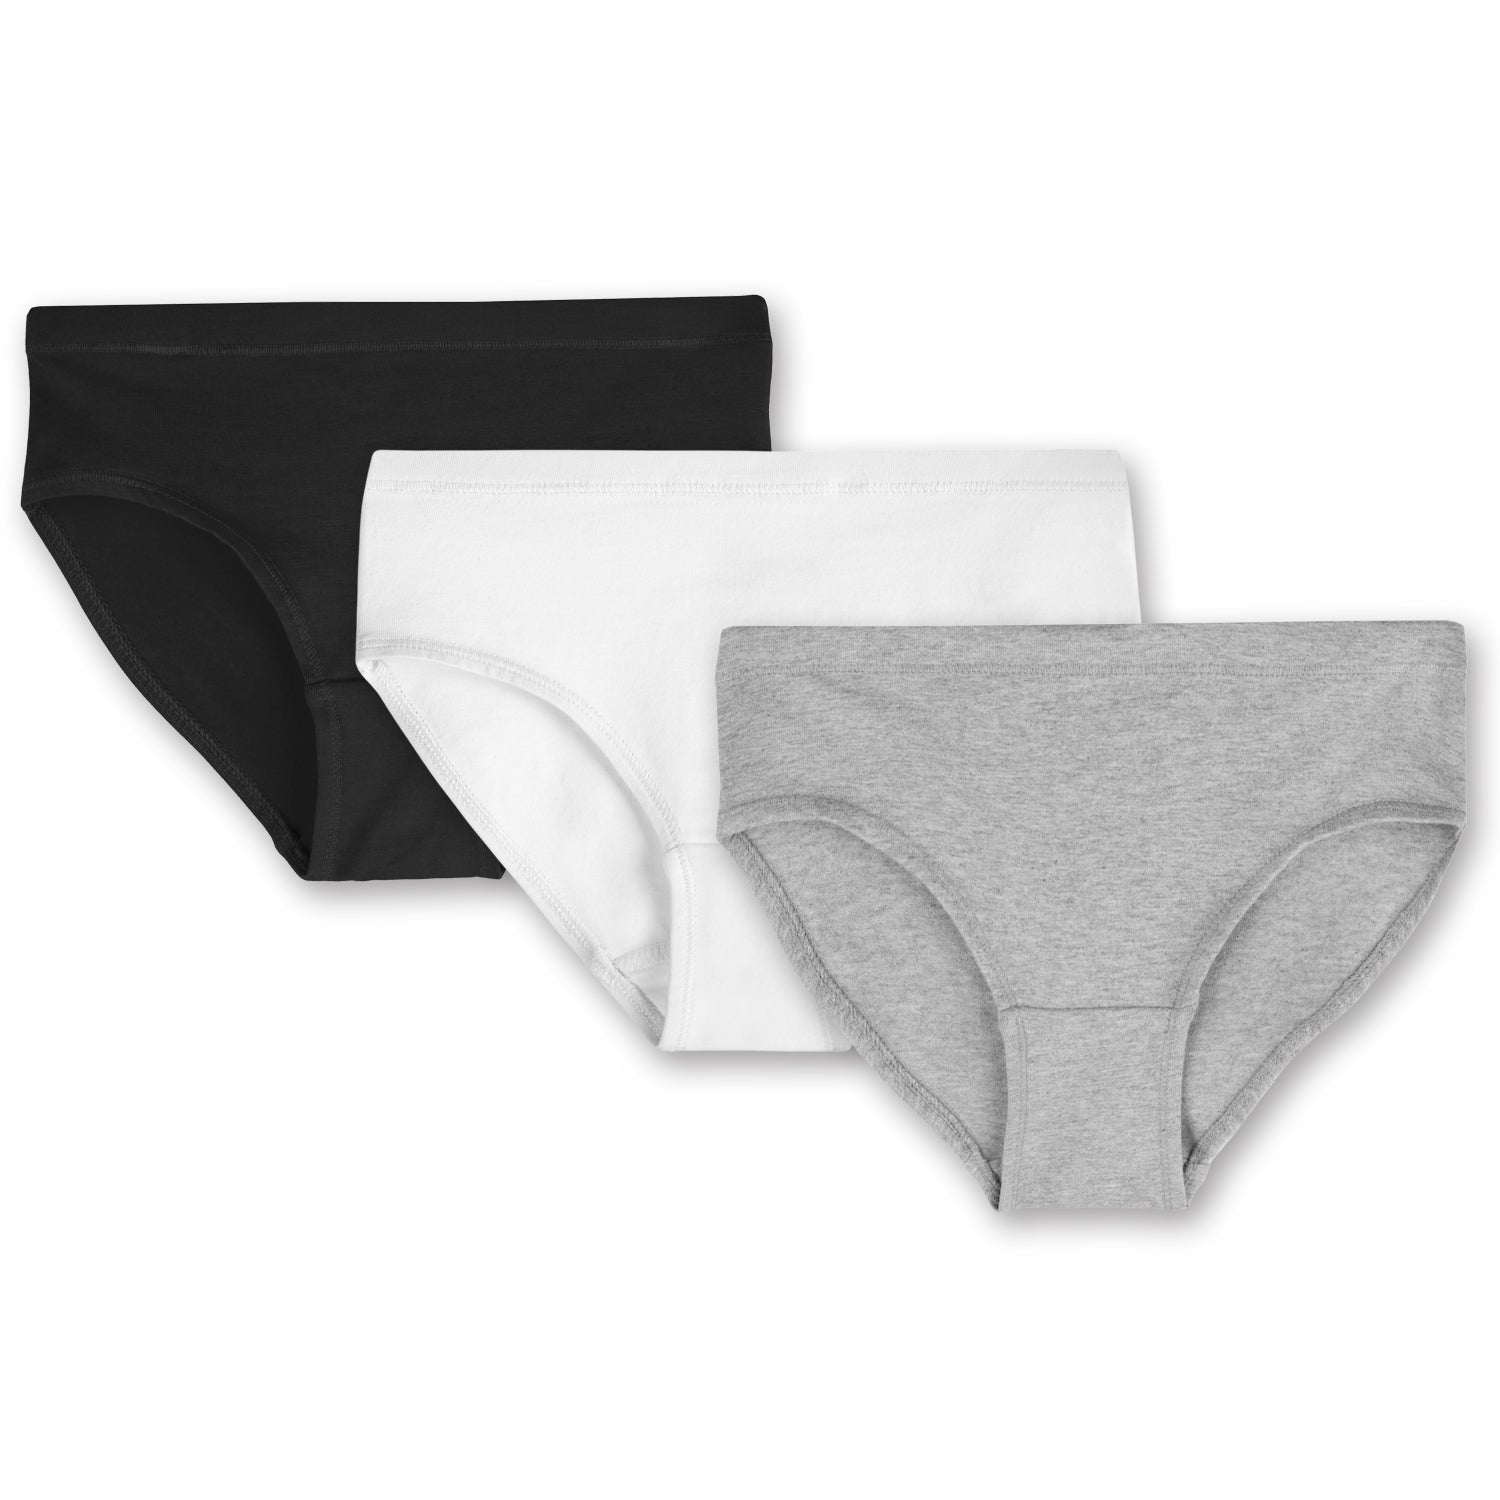 Organic Cotton Kids Underwear 3pcs, Gender Neutral Comfortable